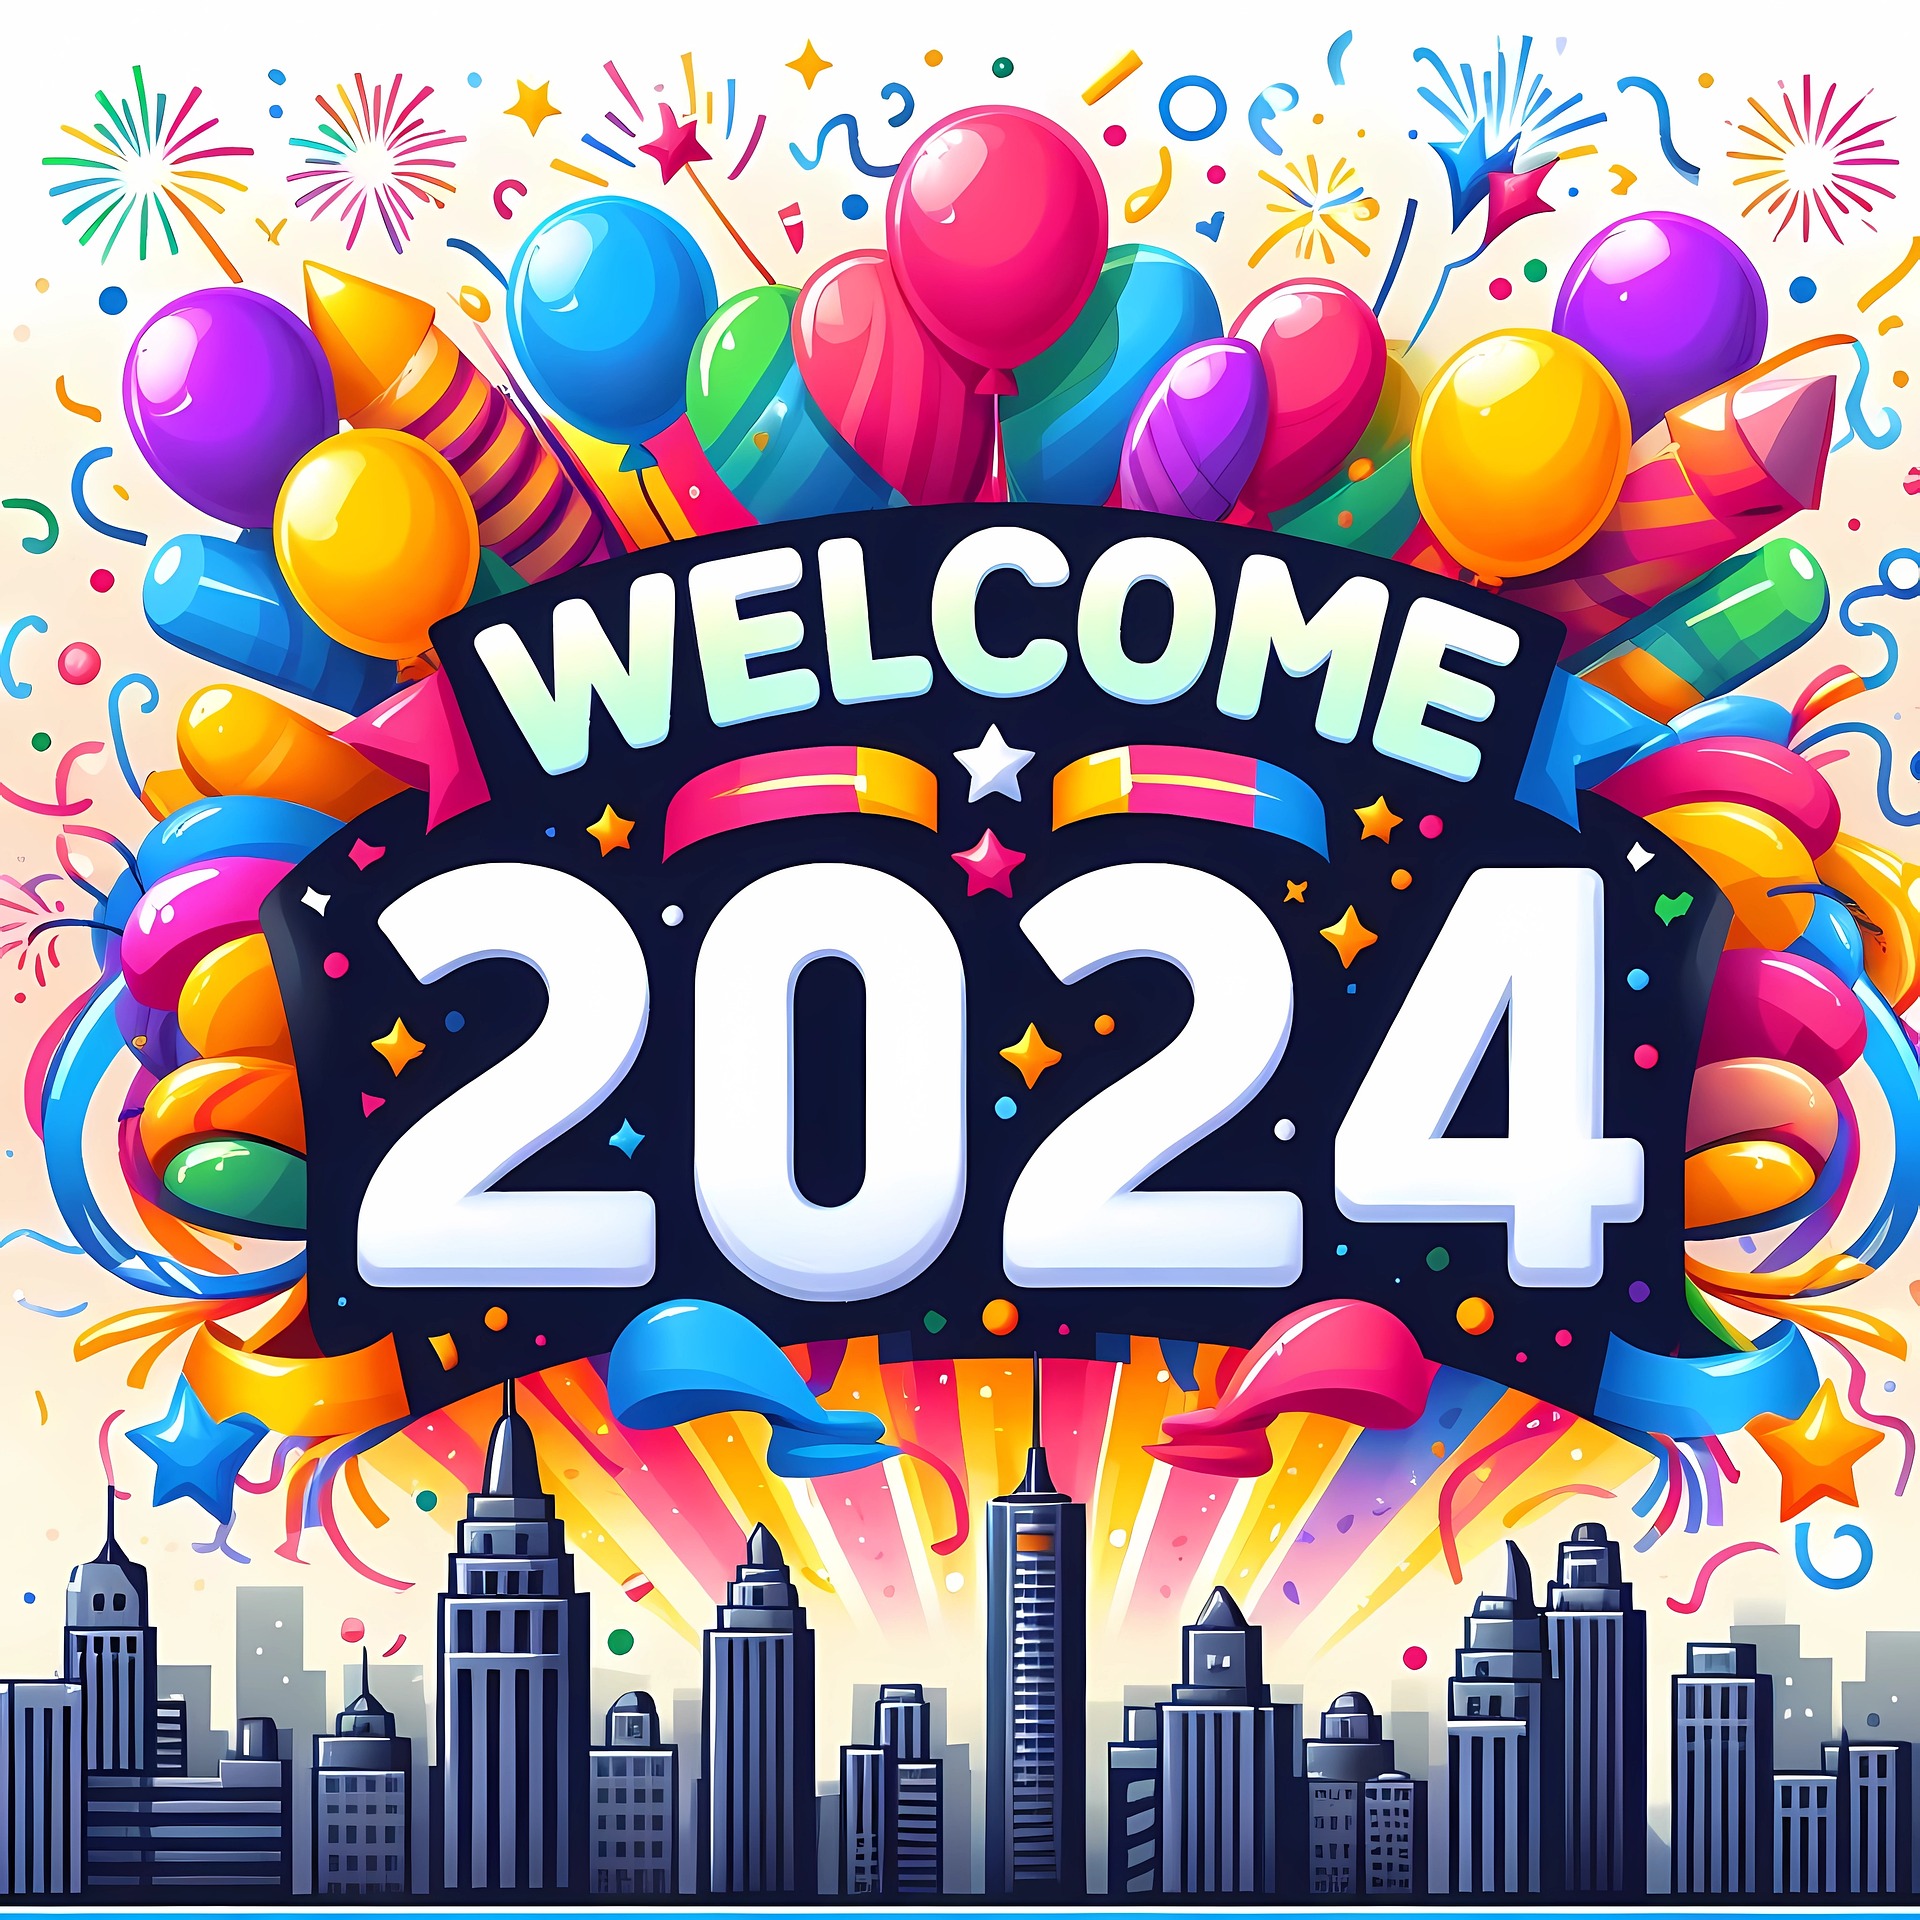 Ngày đầu năm mới 2024, 3 điều cần làm để cả năm gặp may mắn, mọi sự thuận buồm xuôi gió - Ảnh 2.